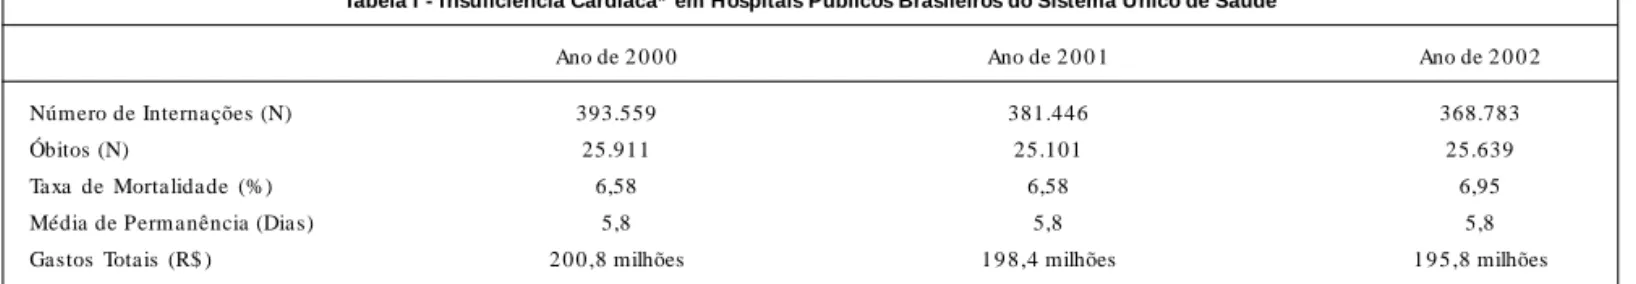 Tabela I - Insuficiência Cardíaca*  em Hospitais Públicos Brasileiros do Sistema Único de Saúde